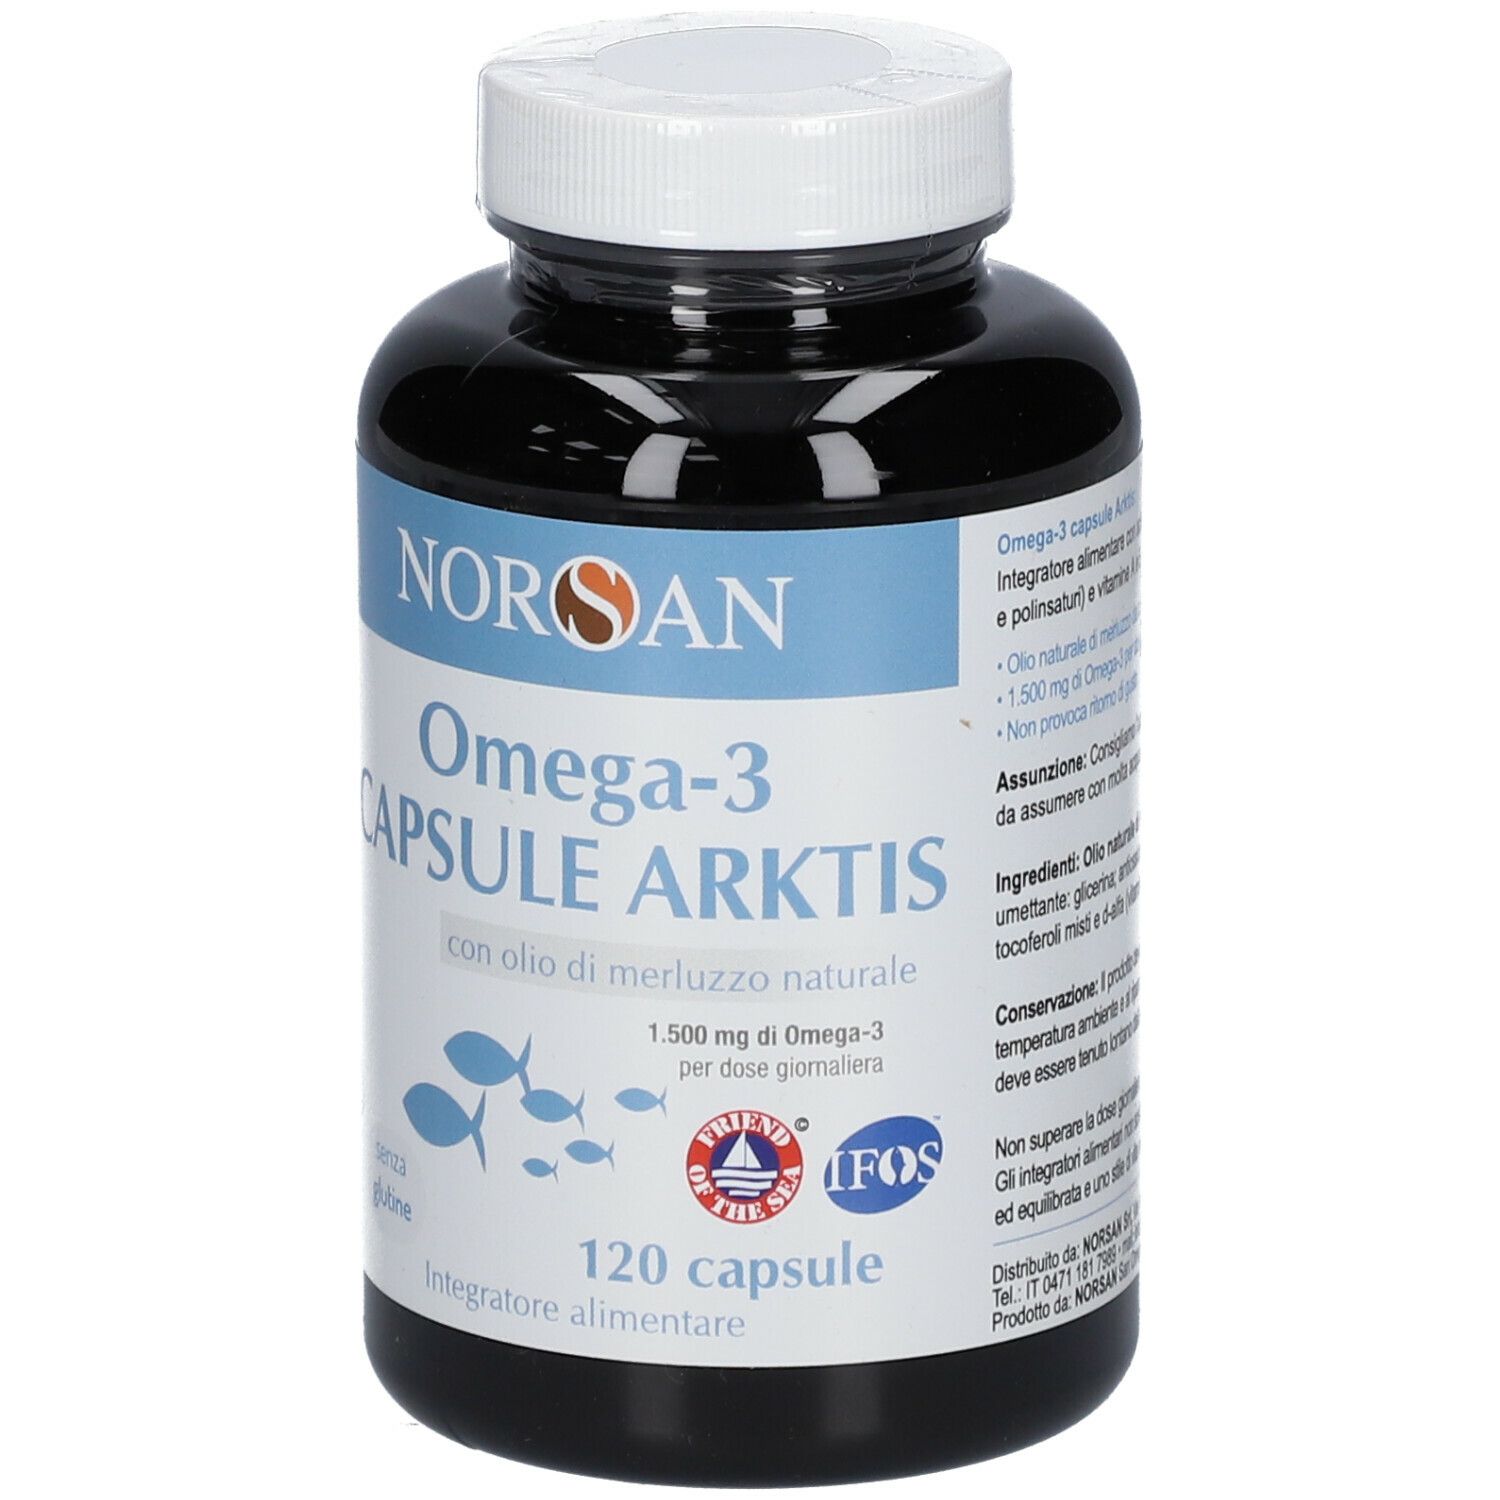 NORSAN Omega-3 Capsule ARKTIS